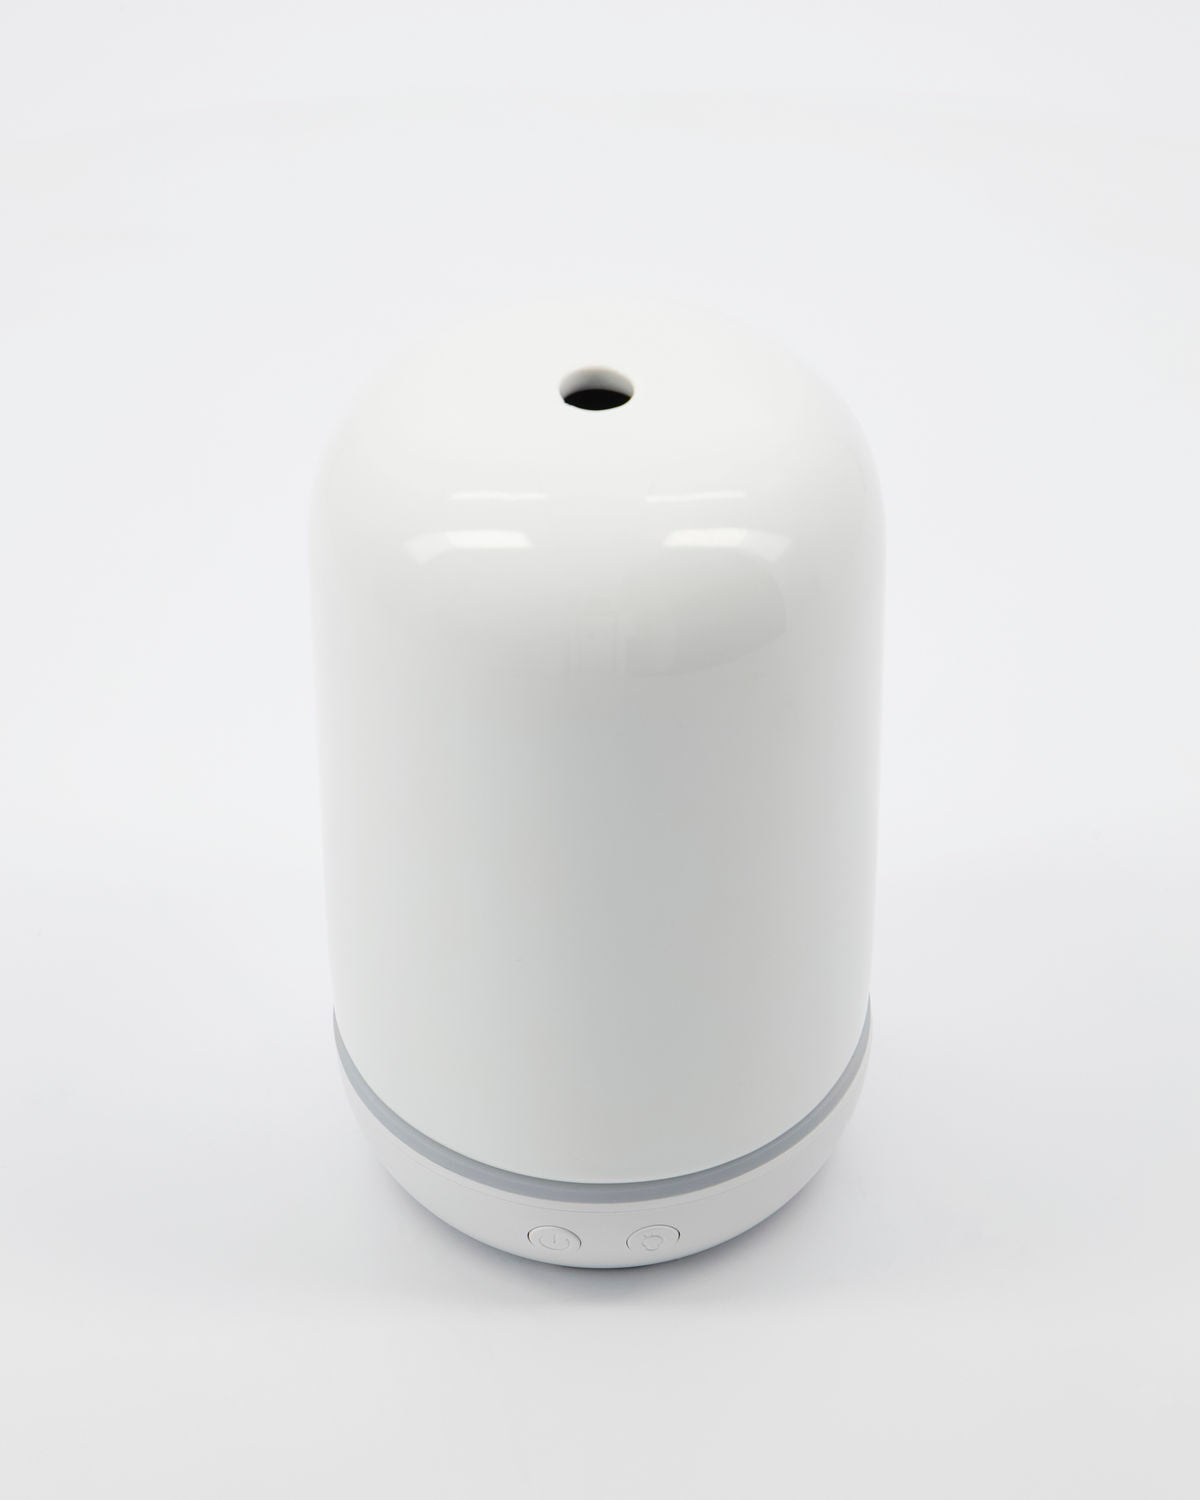 Zerstäuber - Luftbefeuchter  VITALBA aus Keramik - weiß